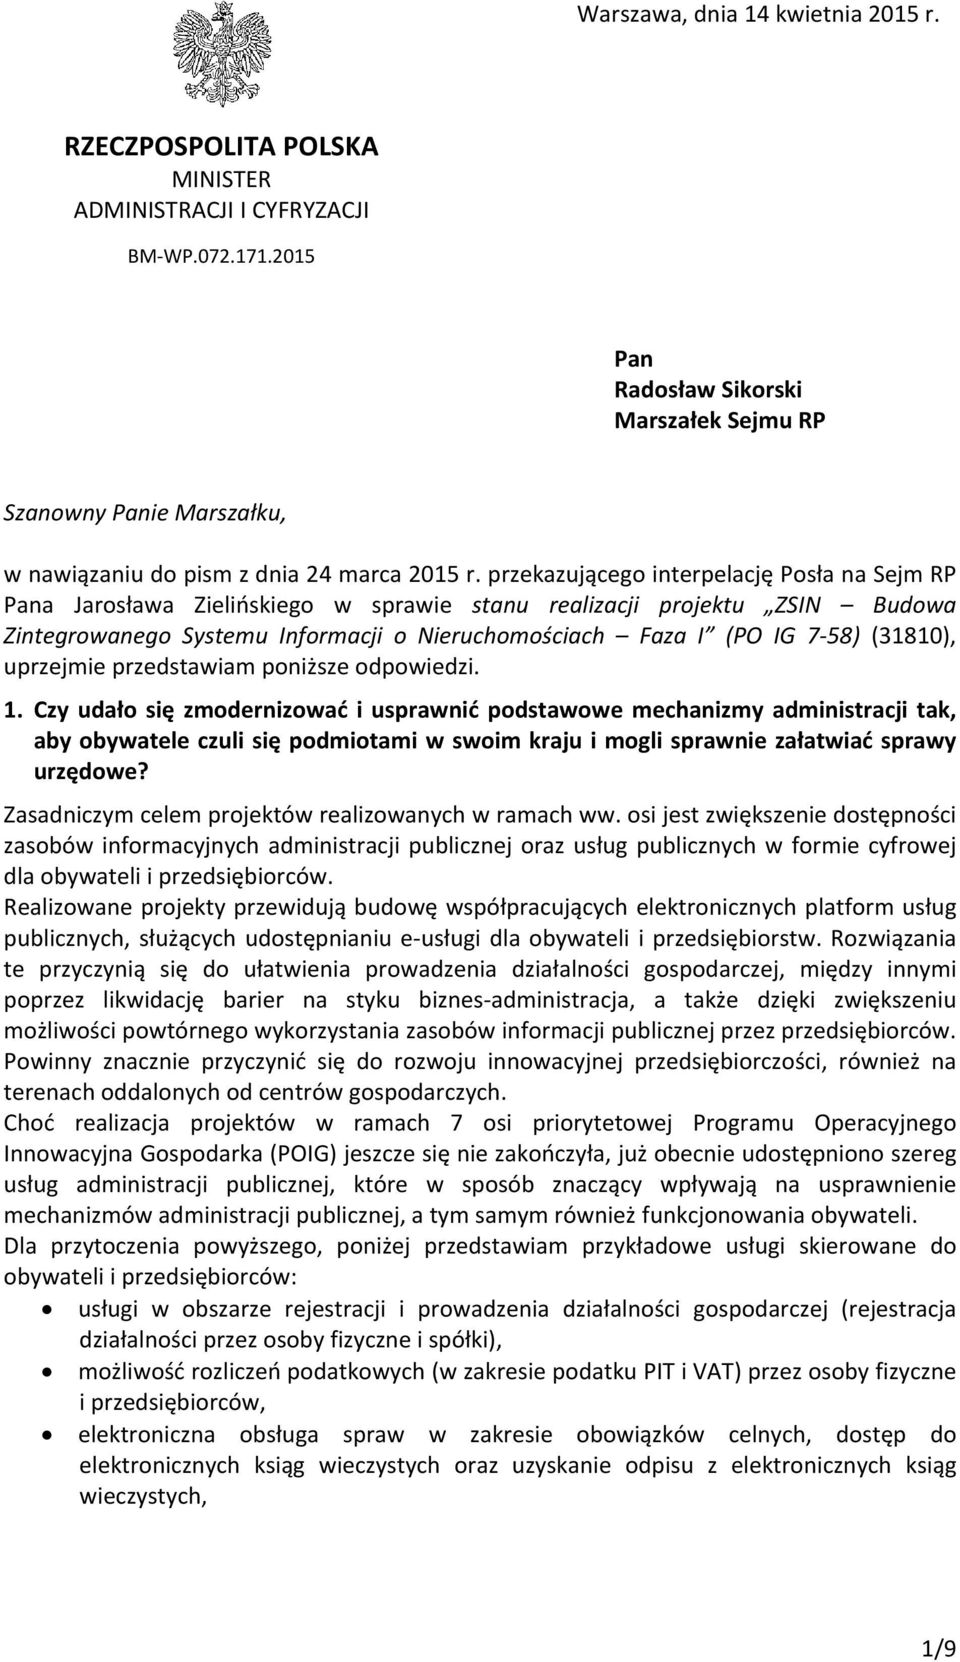 przekazującego interpelację Posła na Sejm RP Pana Jarosława Zielińskiego w sprawie stanu realizacji projektu ZSIN Budowa Zintegrowanego Systemu Informacji o Nieruchomościach Faza I (PO IG 7-58)